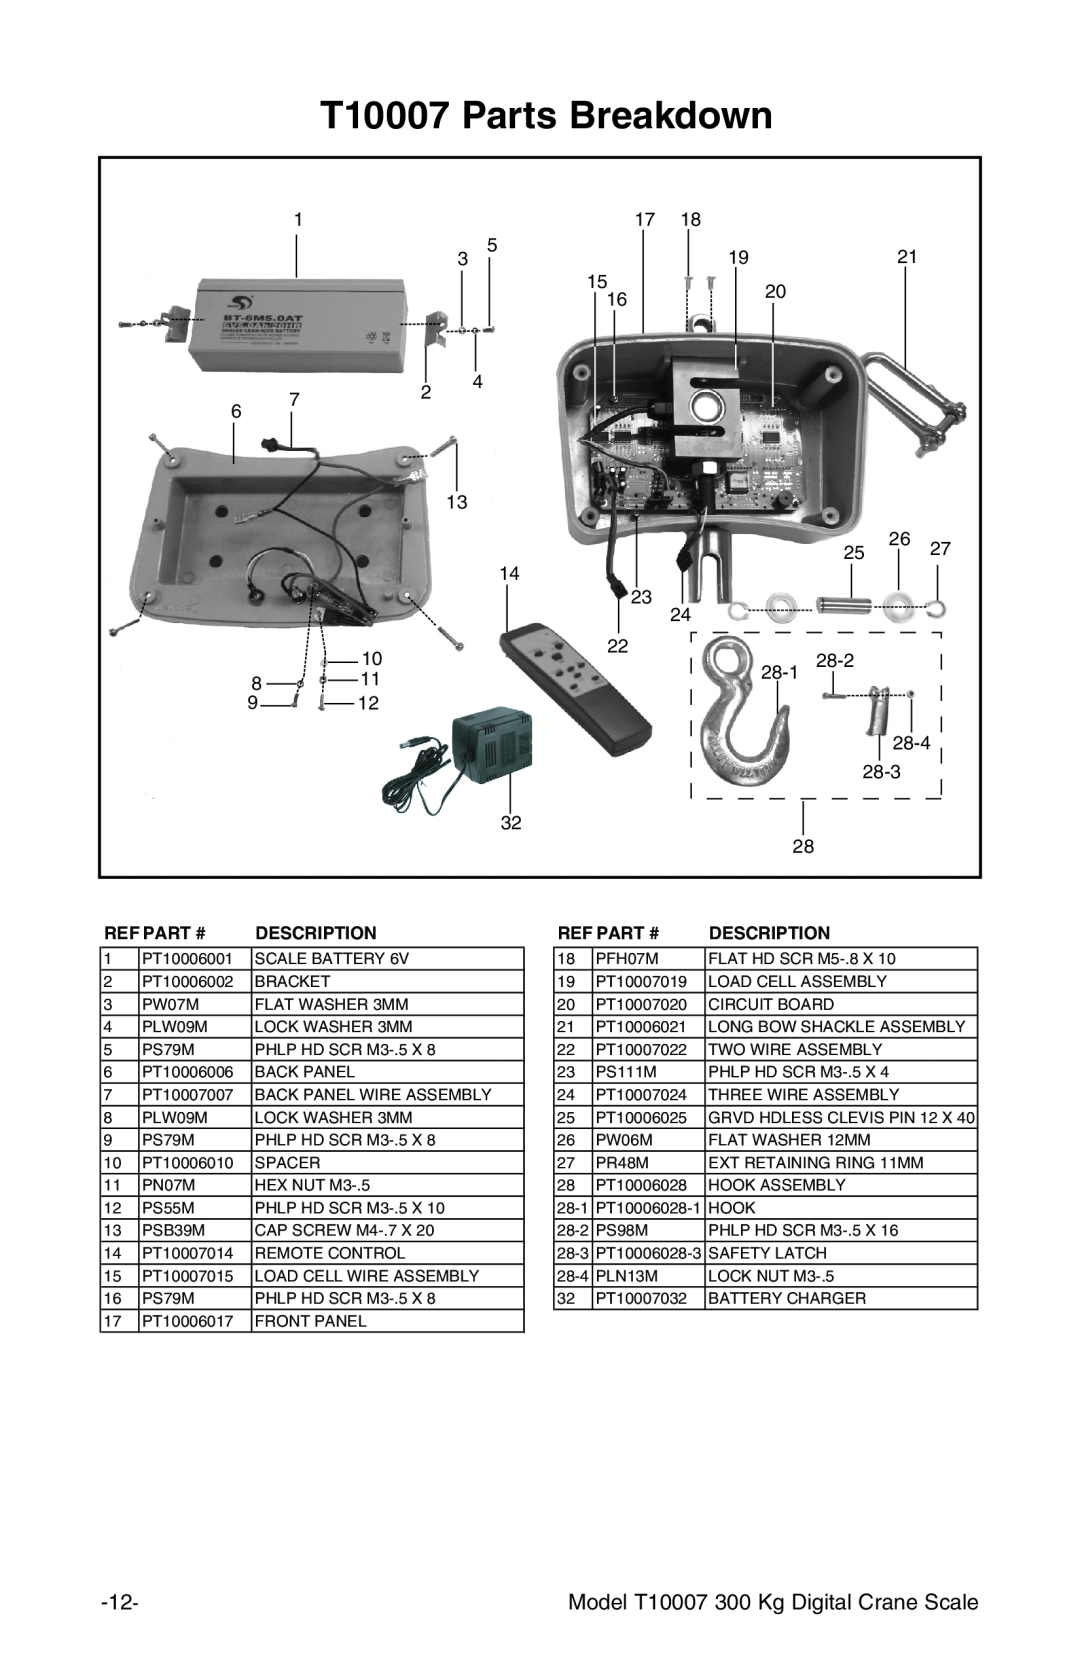 Grizzly owner manual T10007 Parts Breakdown, Ref Part #, Description 